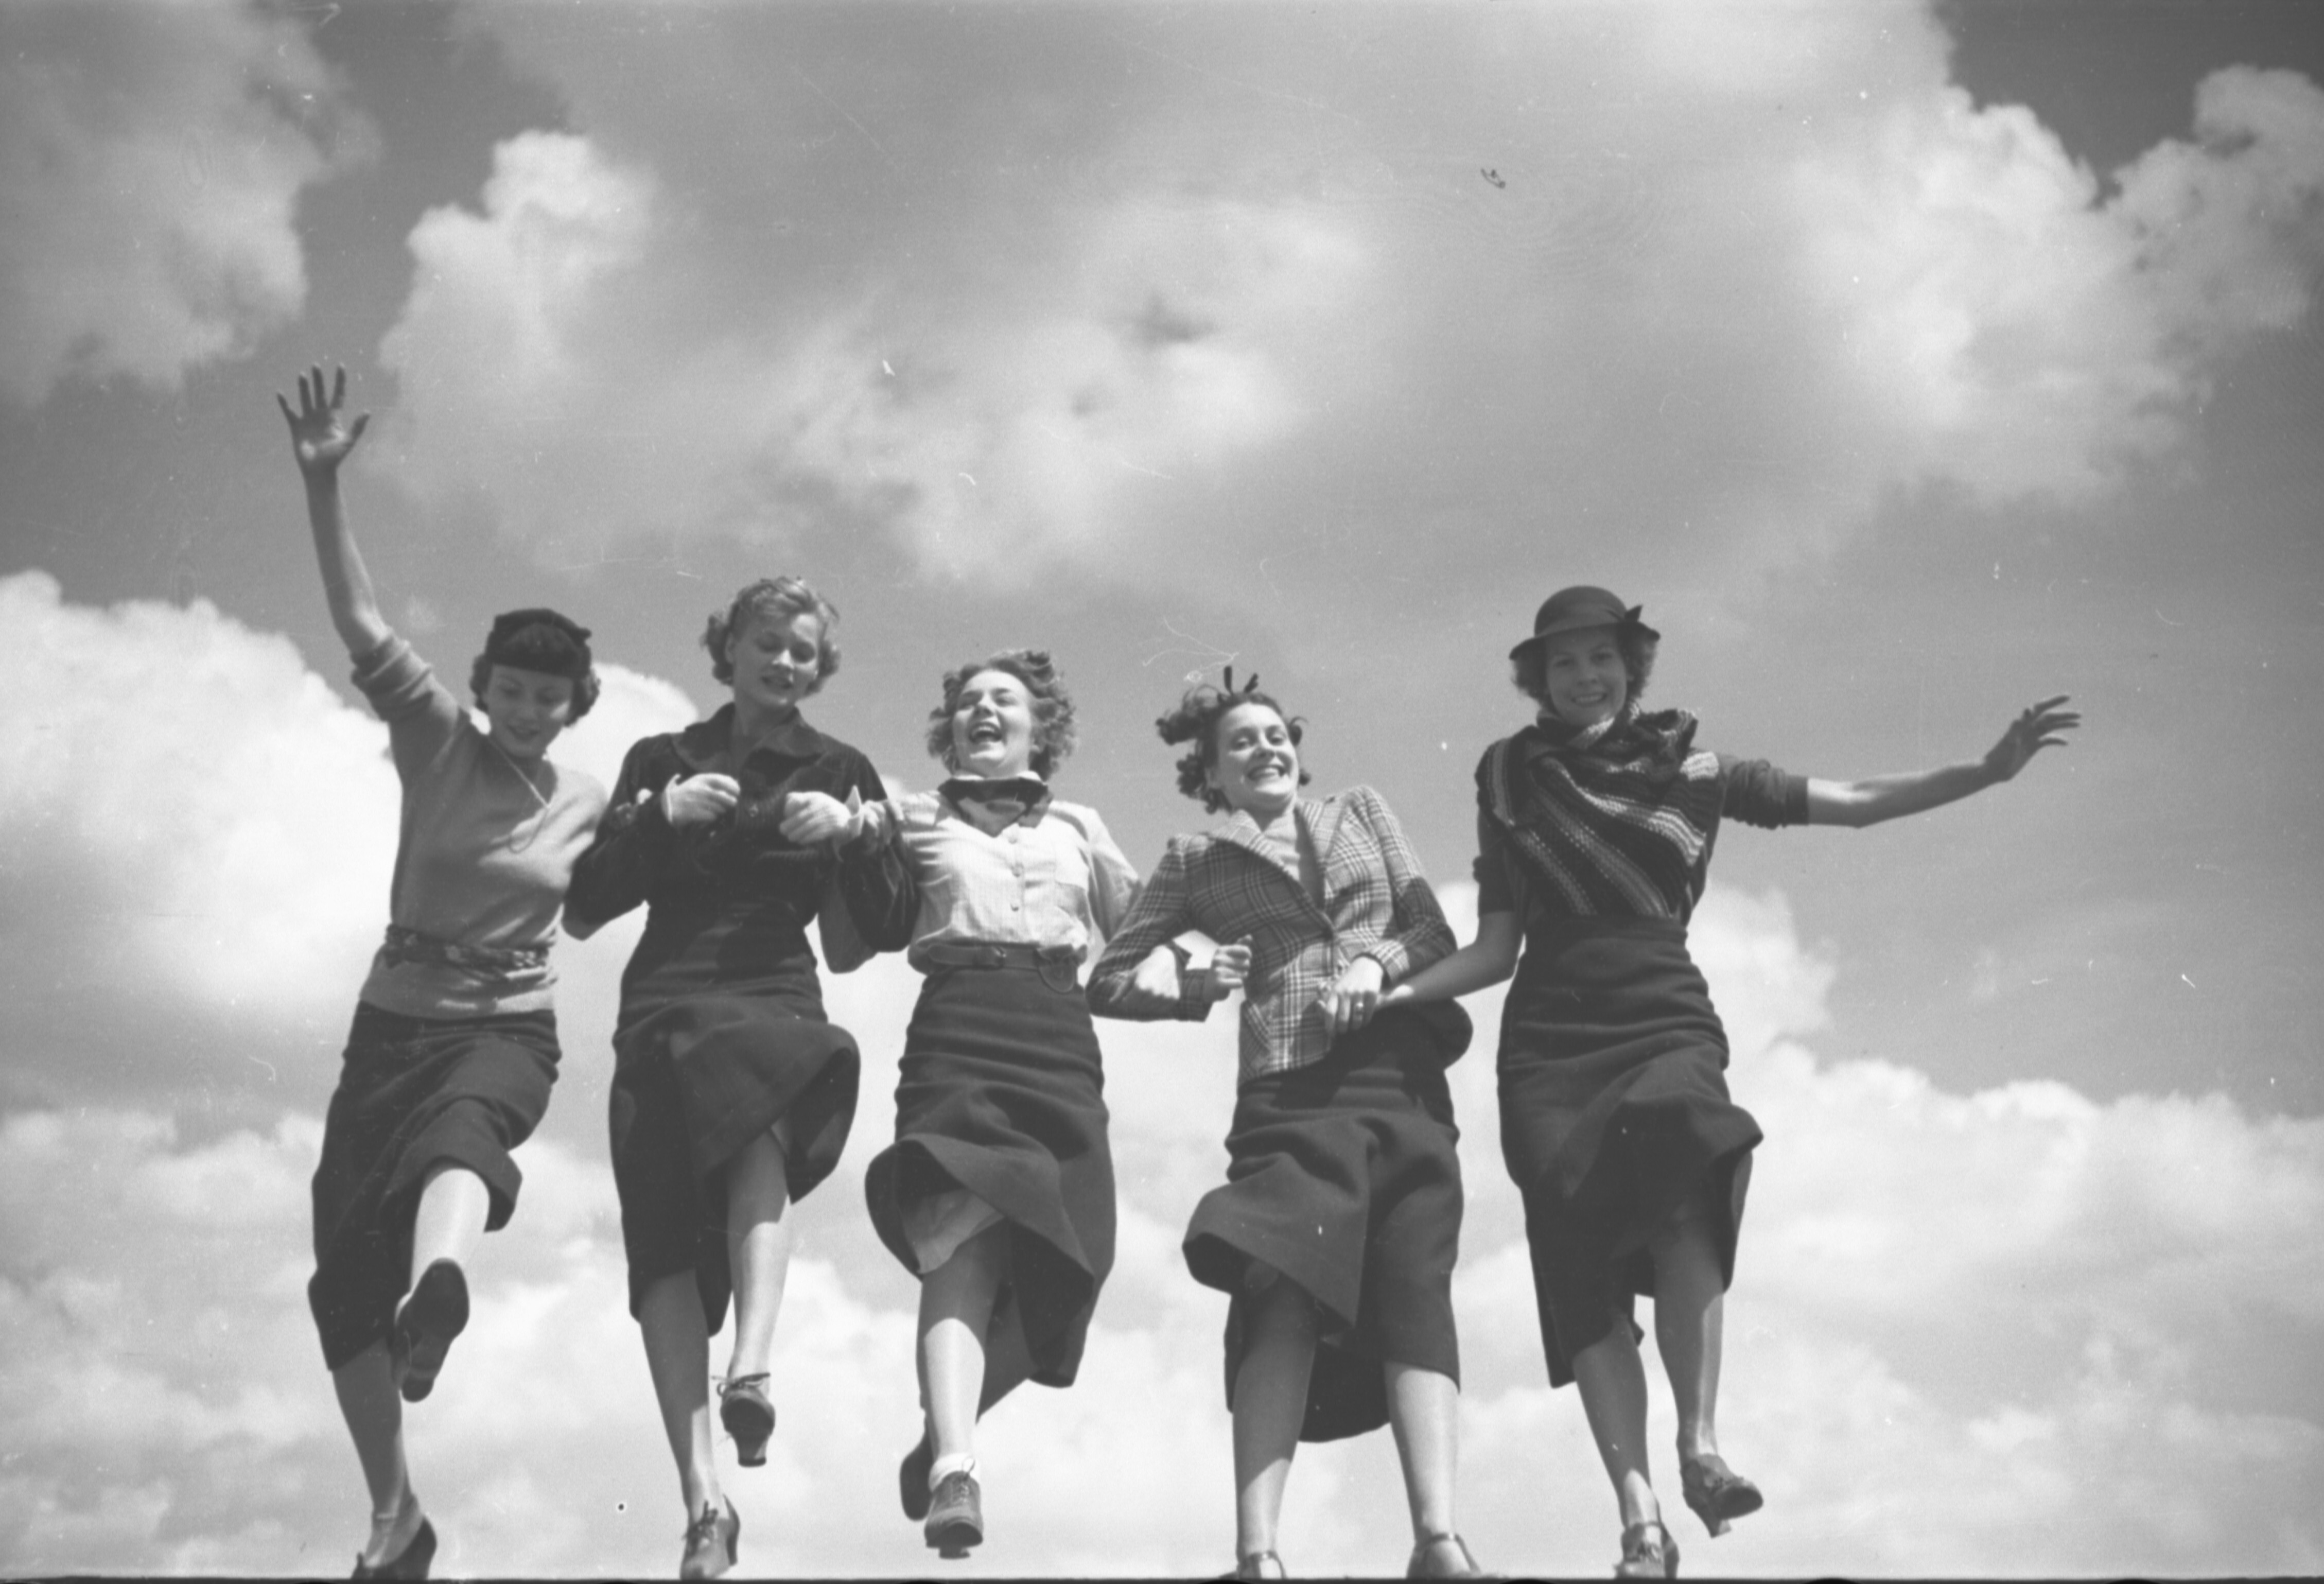 Пять девушек в прыжке, 1935. Фотограф Тони Фрисселл